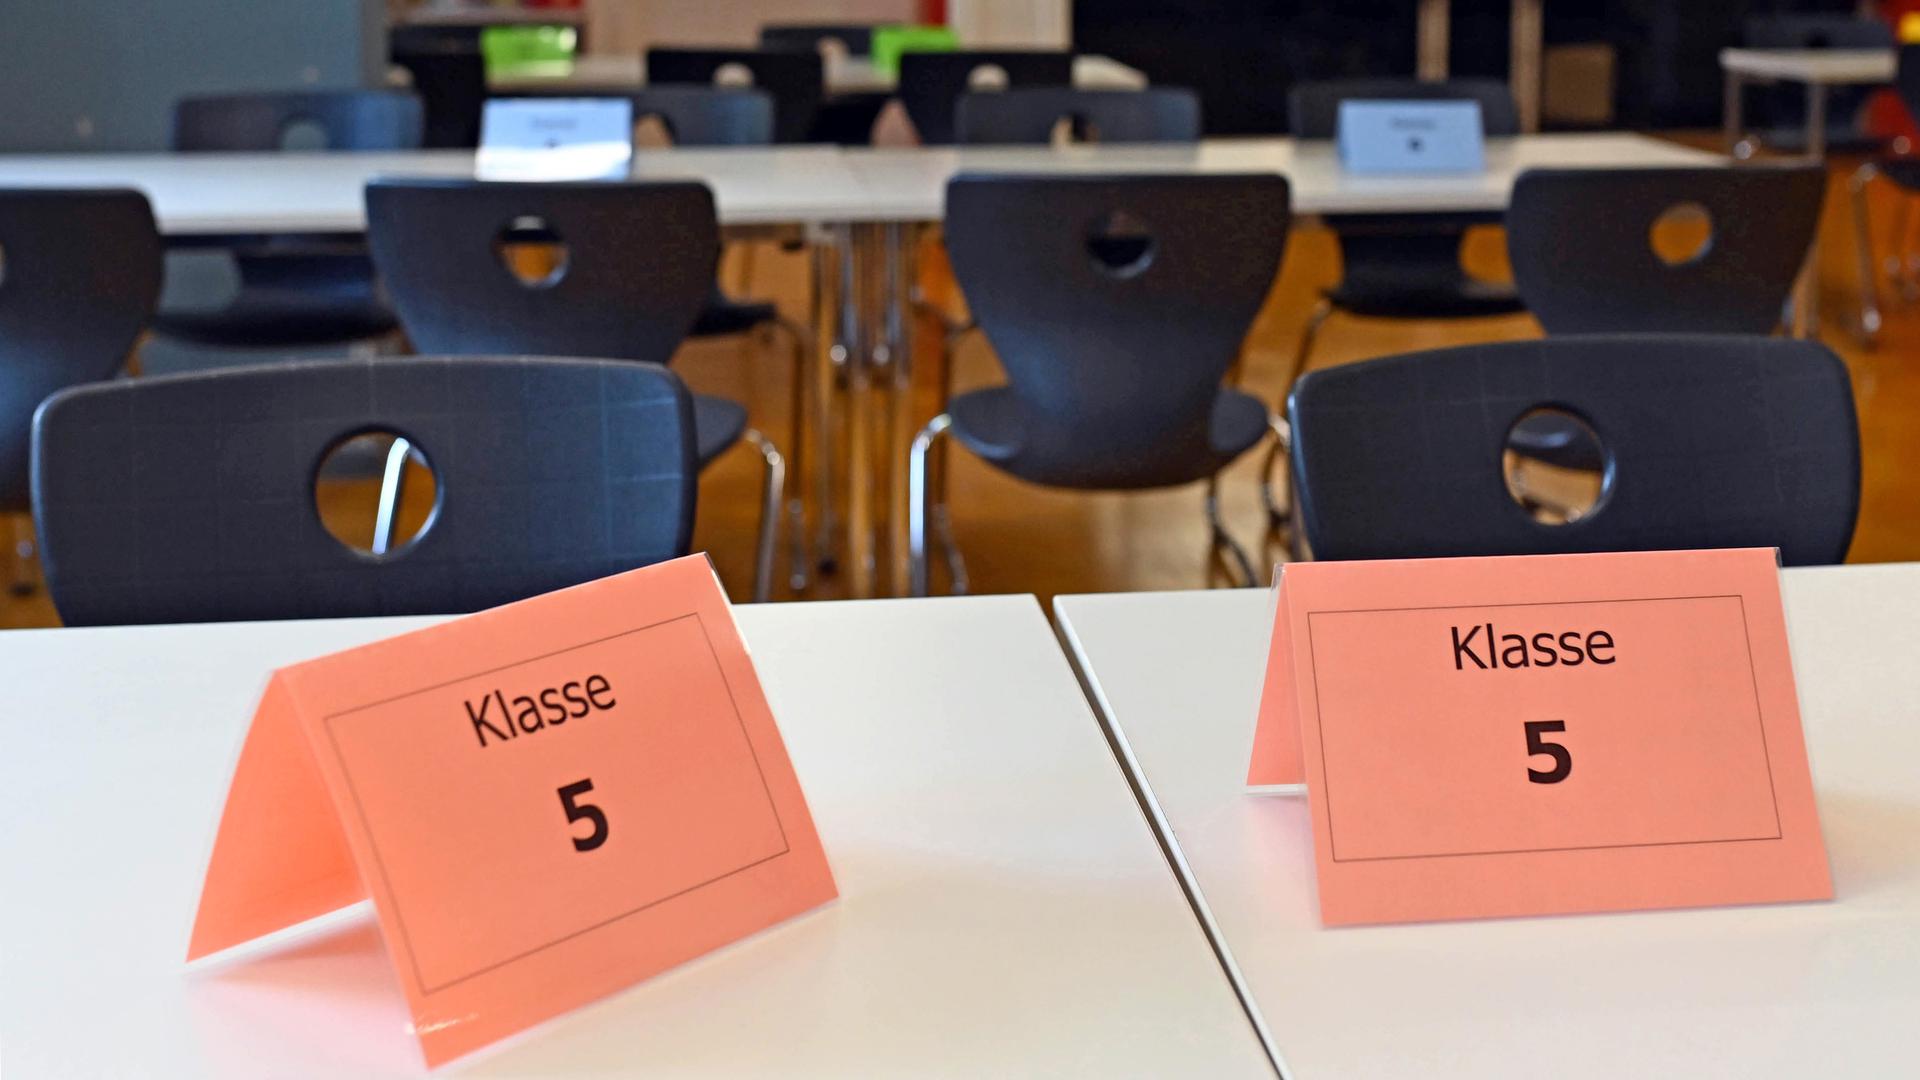 Im Max-Planck-Gymnasium Karlsruhe sind in der Mensa in Corona-Zeiten die Tische mit den jeweiligen Klassenverbänden gekennzeichnet.